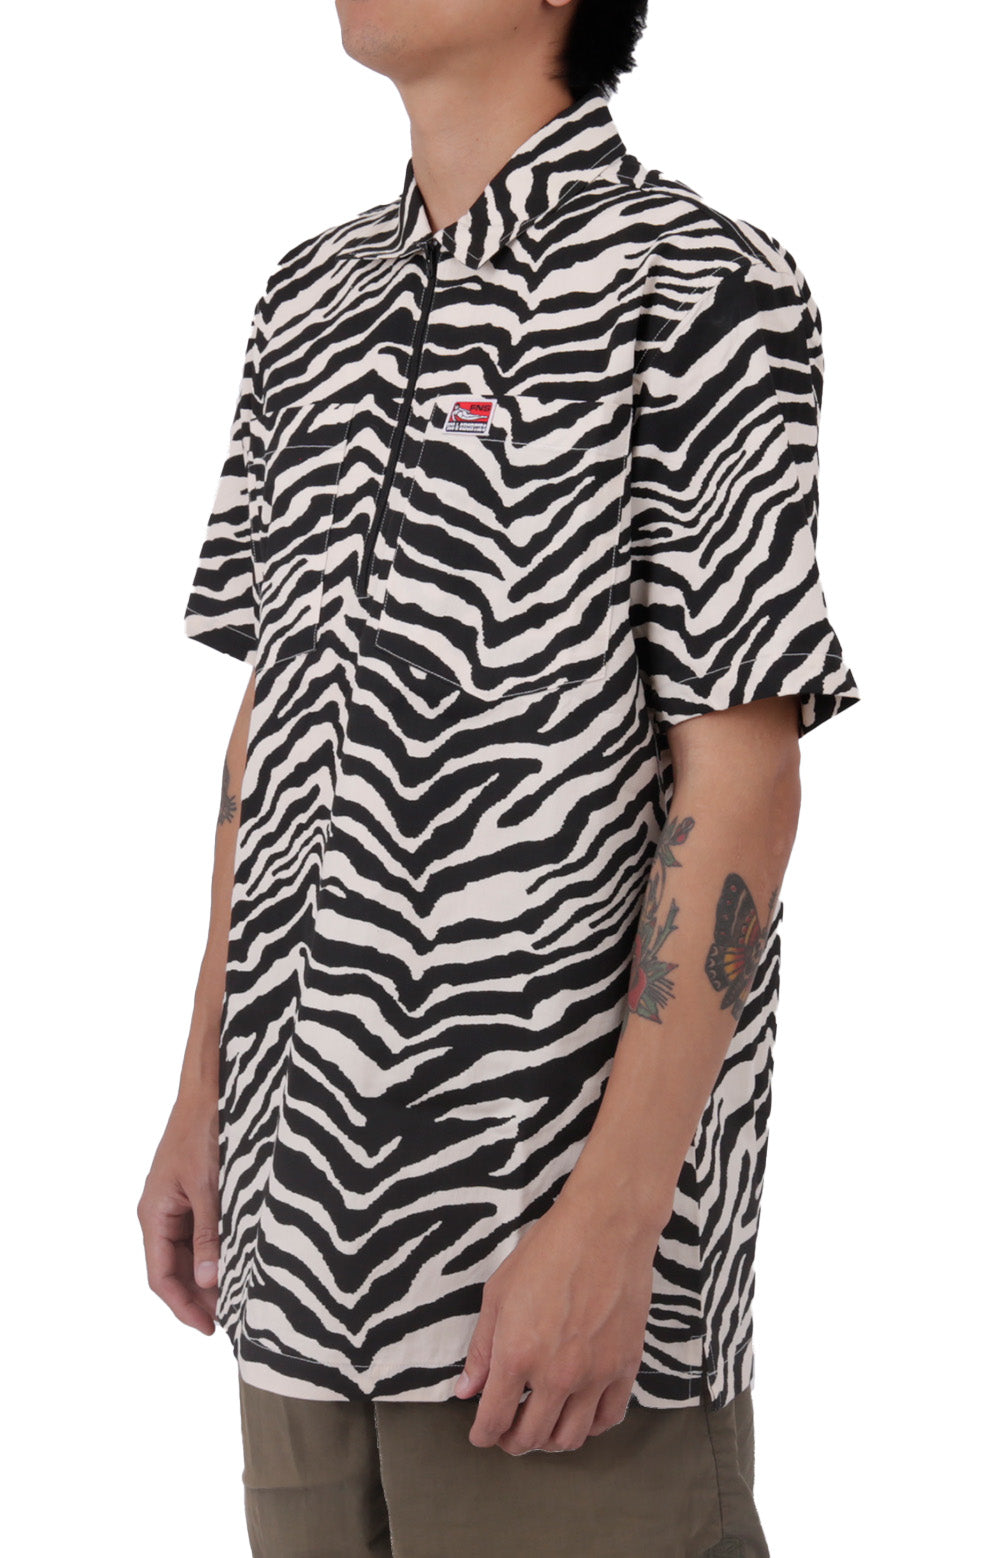 Zebra Half-Zip Shirt - White/Black